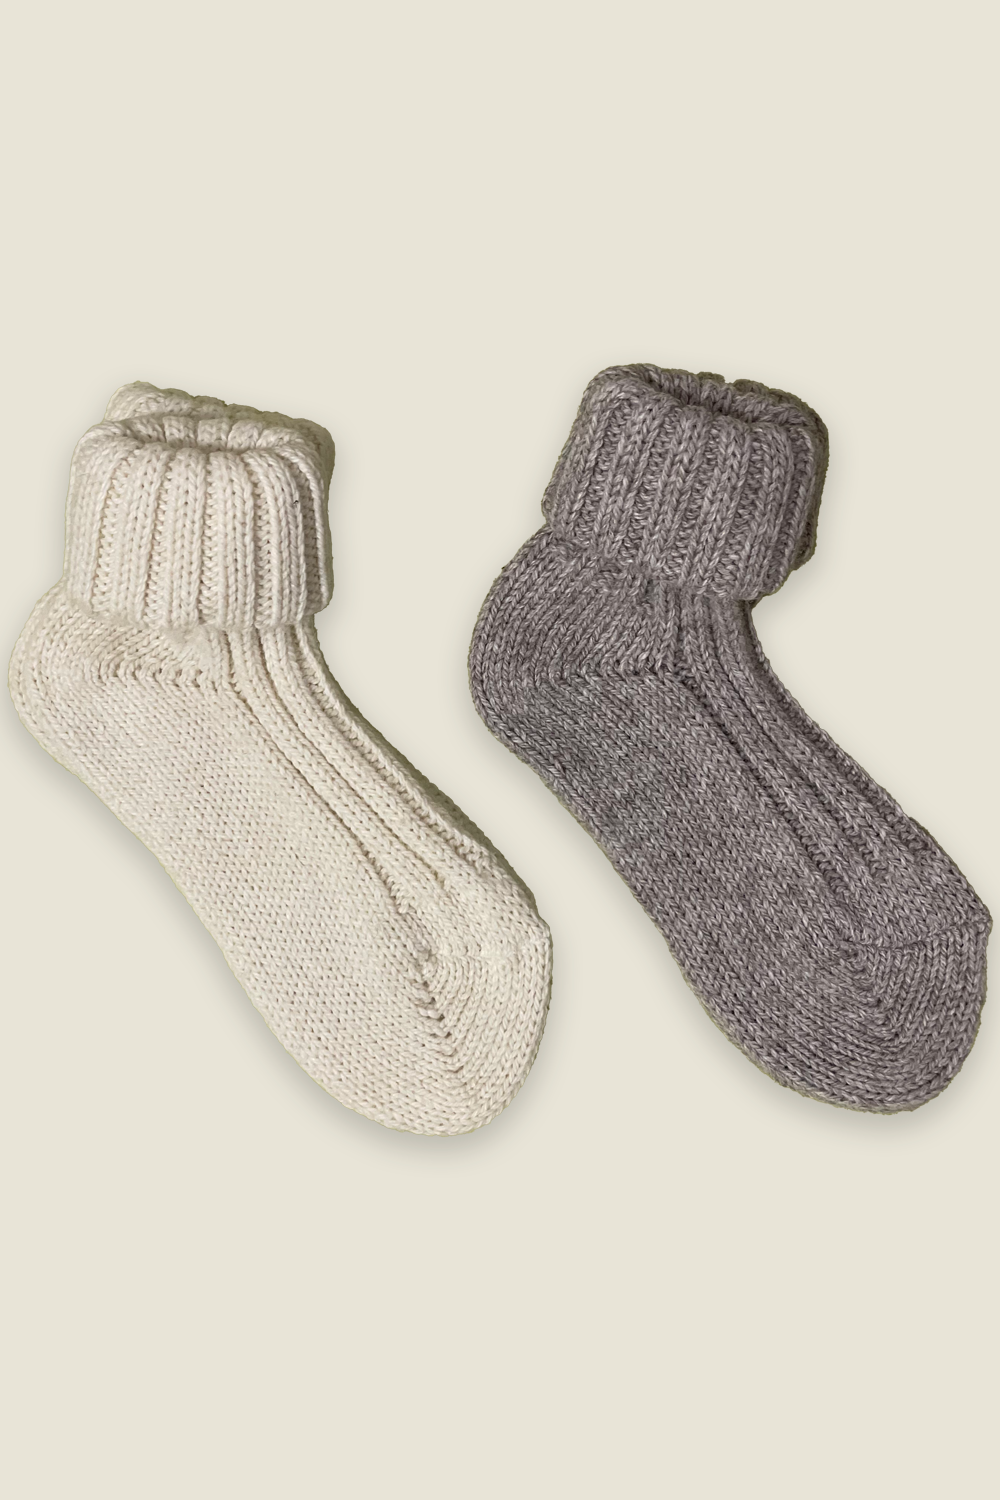 Calcetines de alpaca - natural y gris - 2 pares